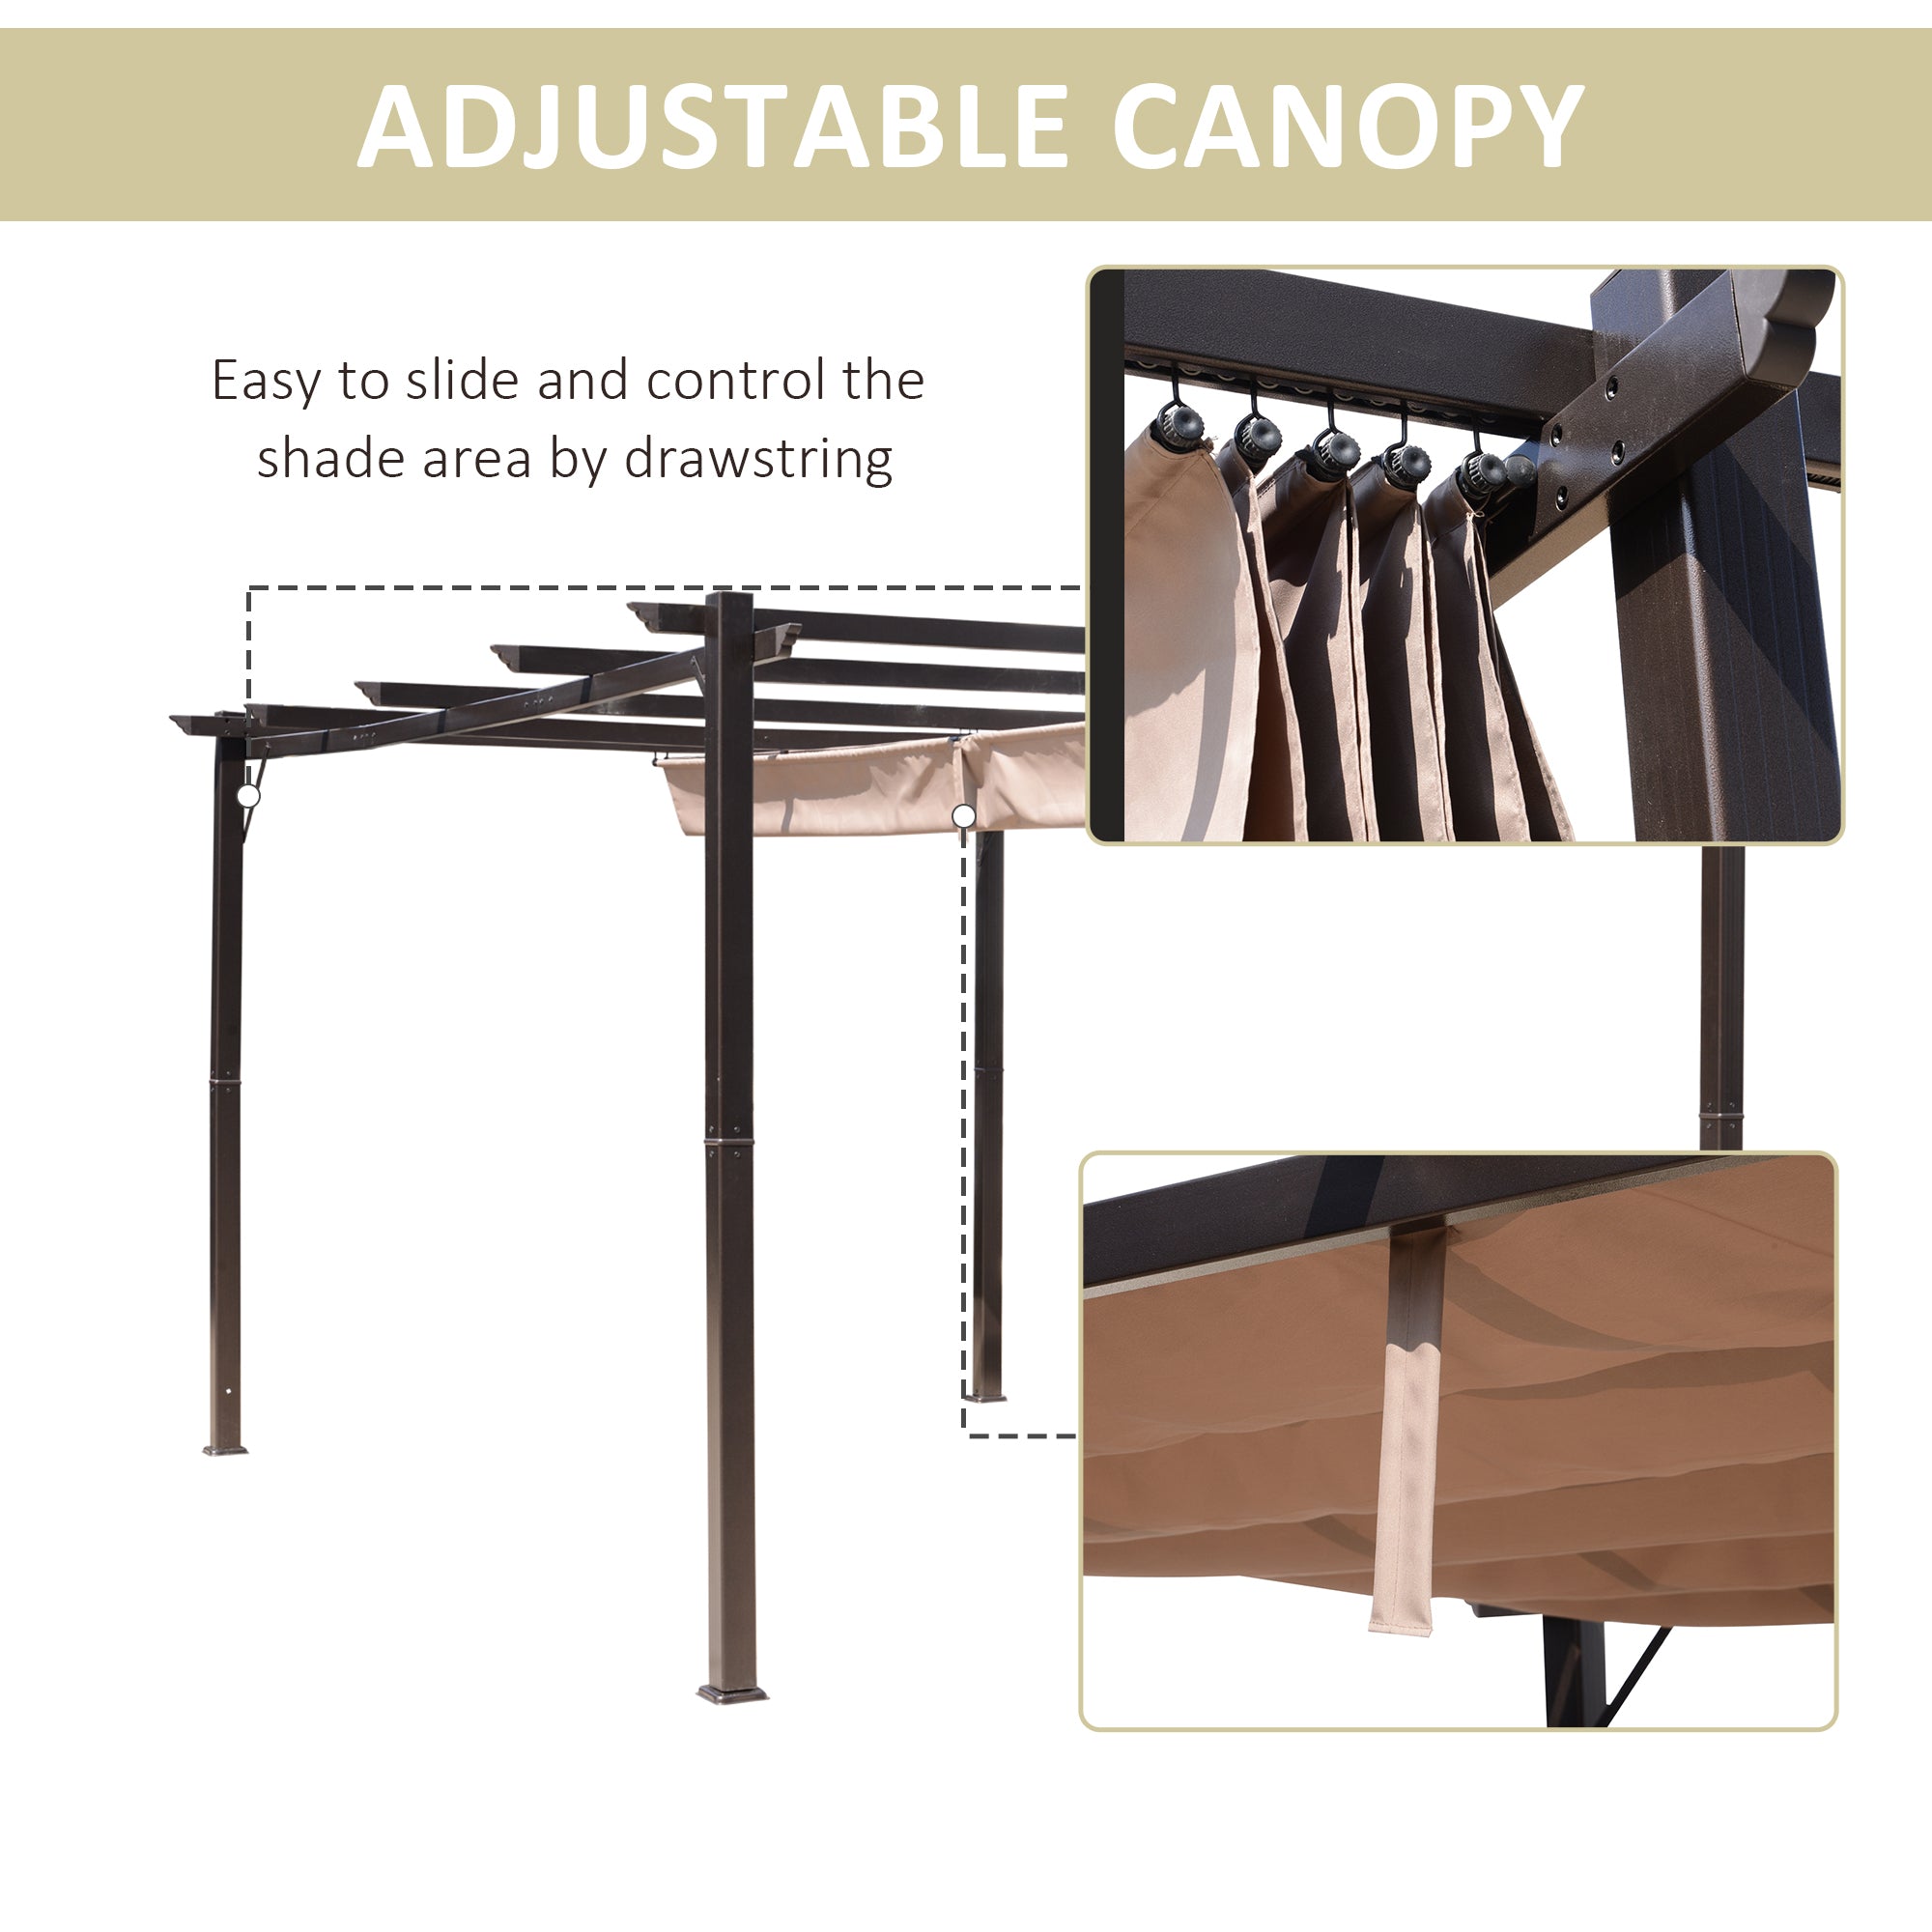 10' x 13' Outdoor Retractable Pergola Canopy, Aluminum brown-aluminium